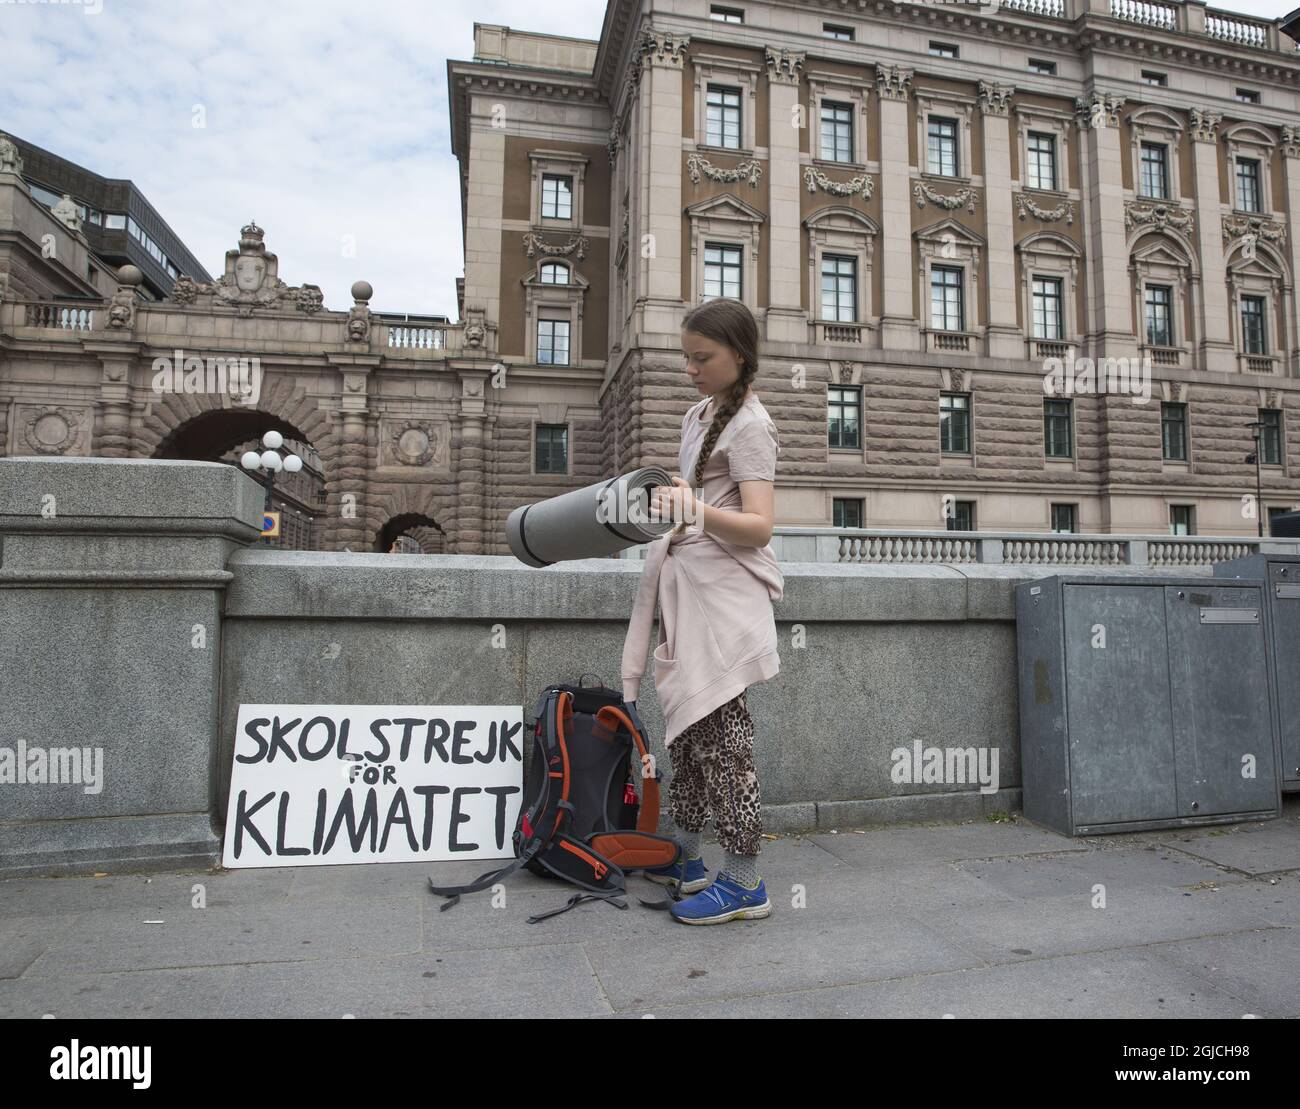 L'attivista svedese per il clima Greta Thunberg durante il suo sciopero scolastico del venerdì per l'azione enivronmentale #FridaysForFuture fuori dal parlamento svedese a Stoccolma Svezia 7 giugno (c) Johan Jeppsson / TT / code 2551 Foto Stock